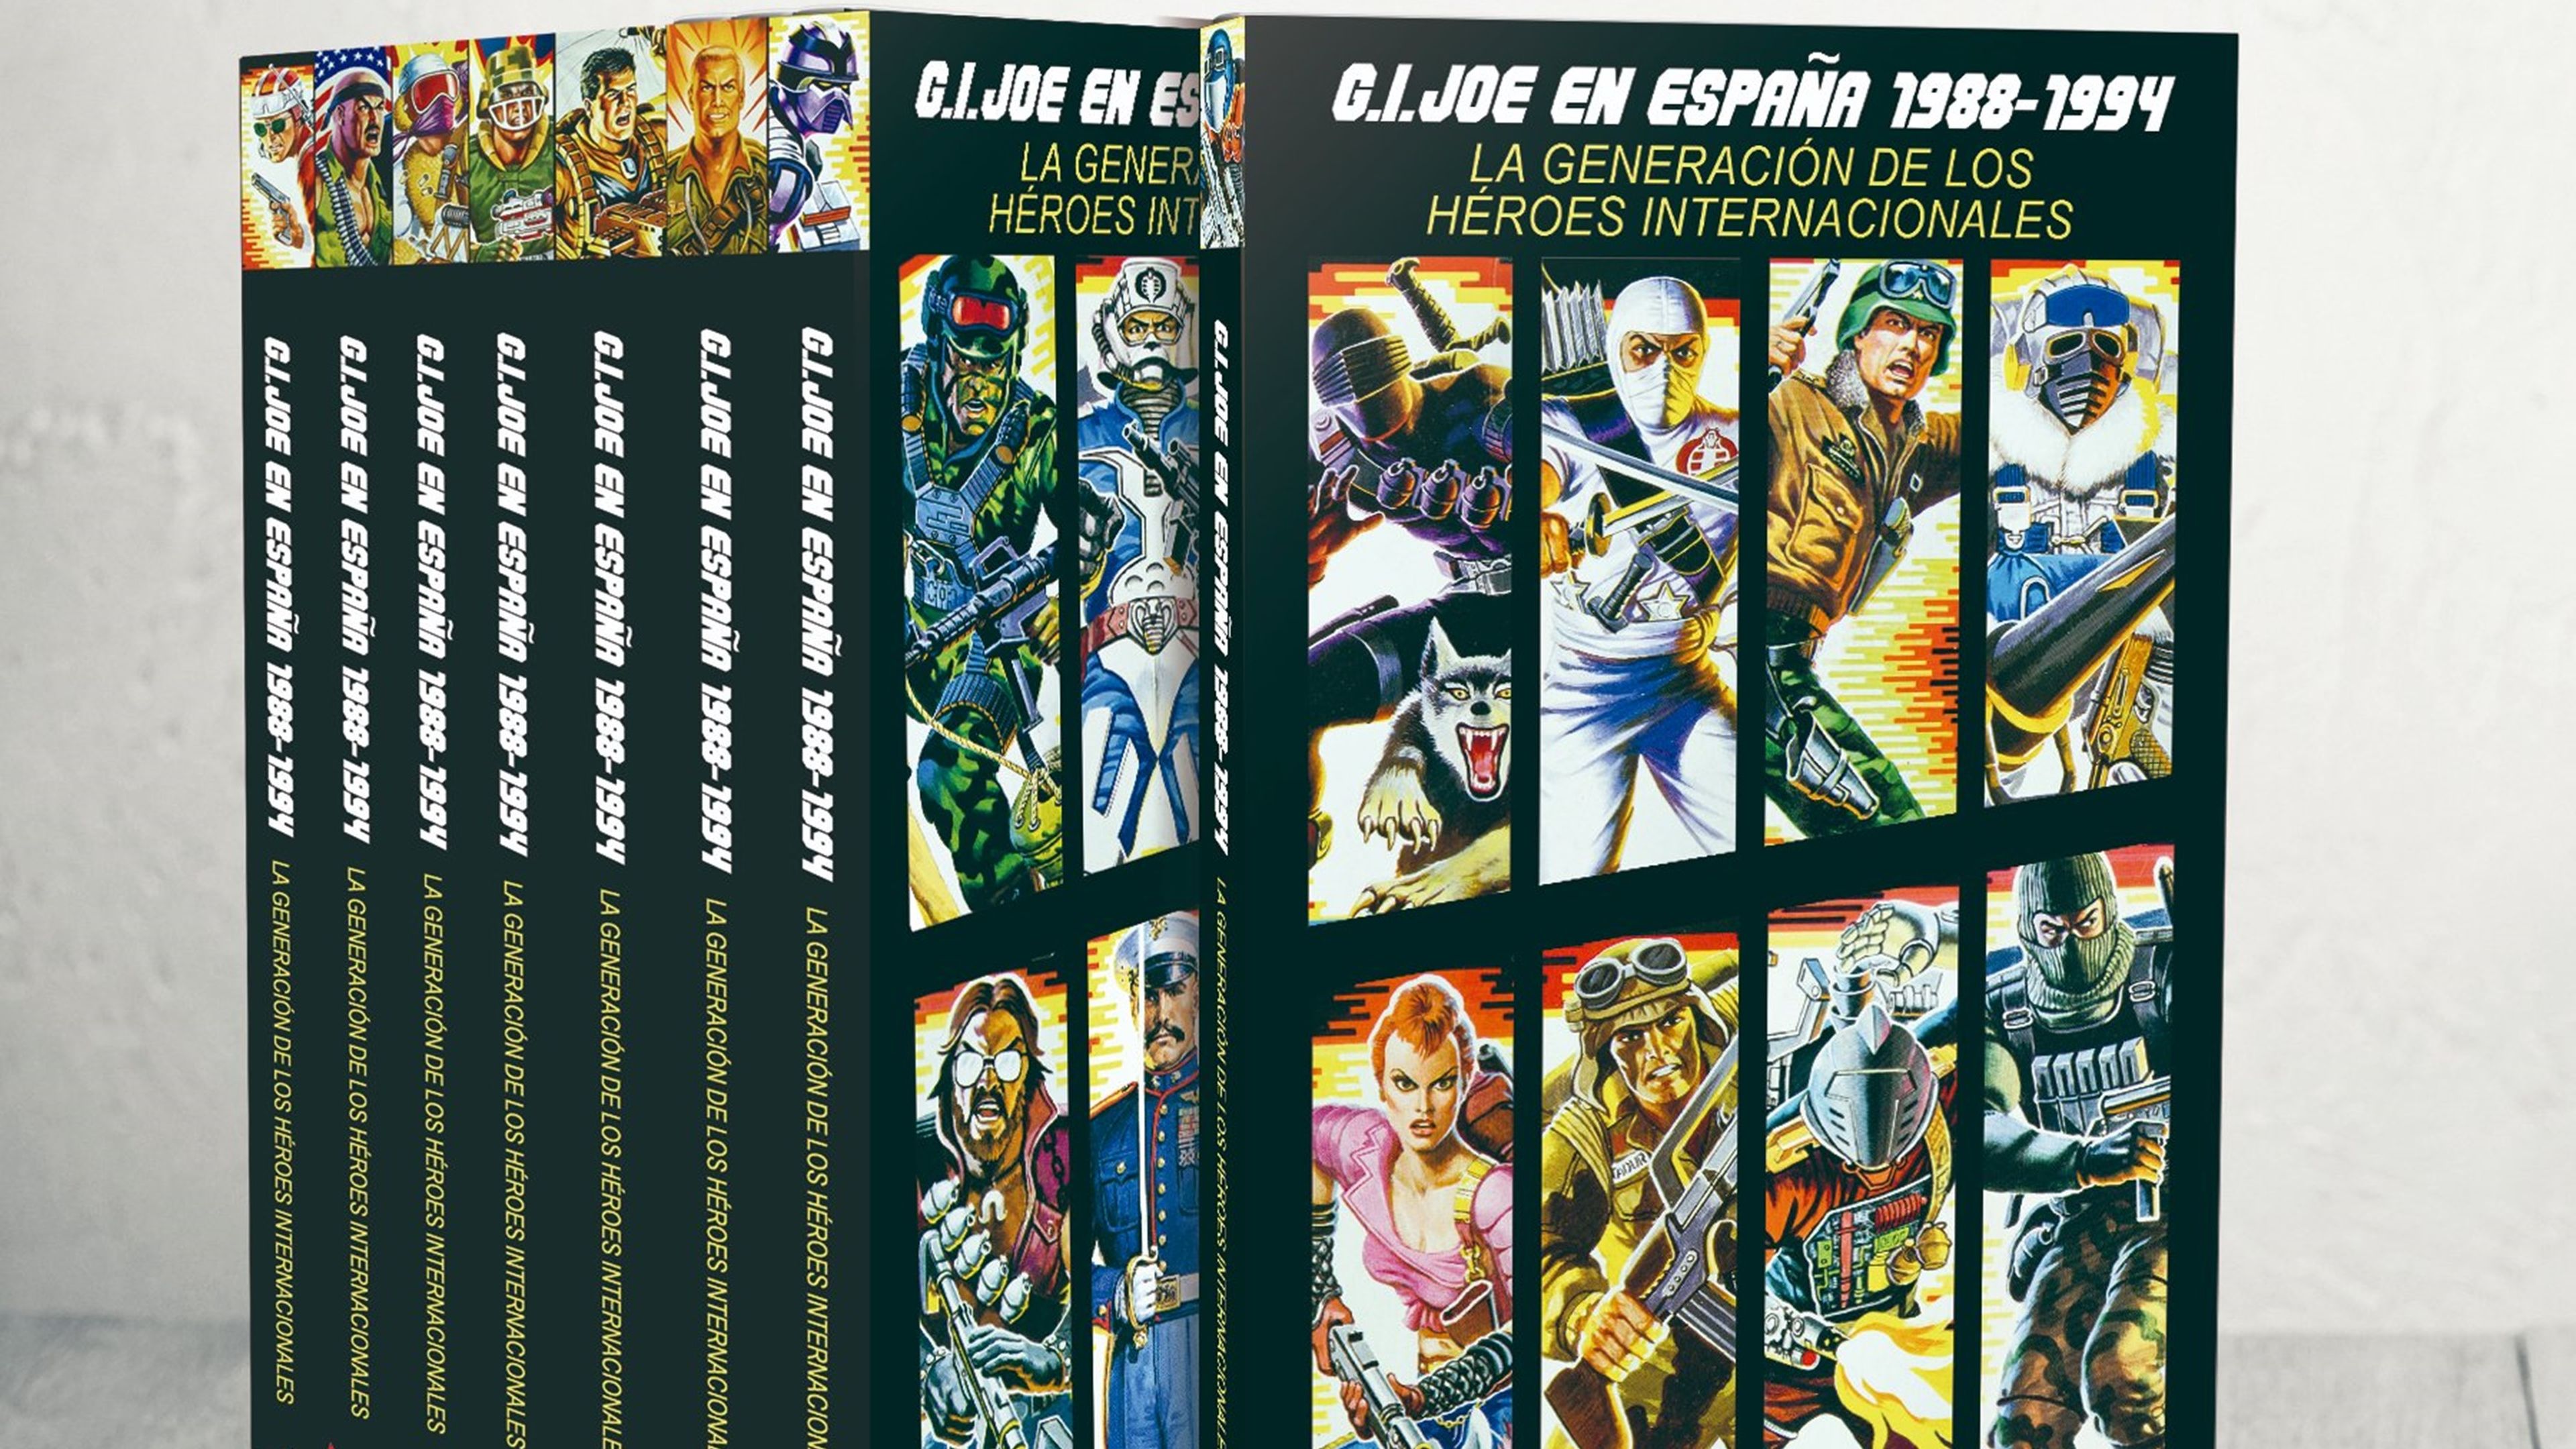 G.I.Joe en España 1988-1994